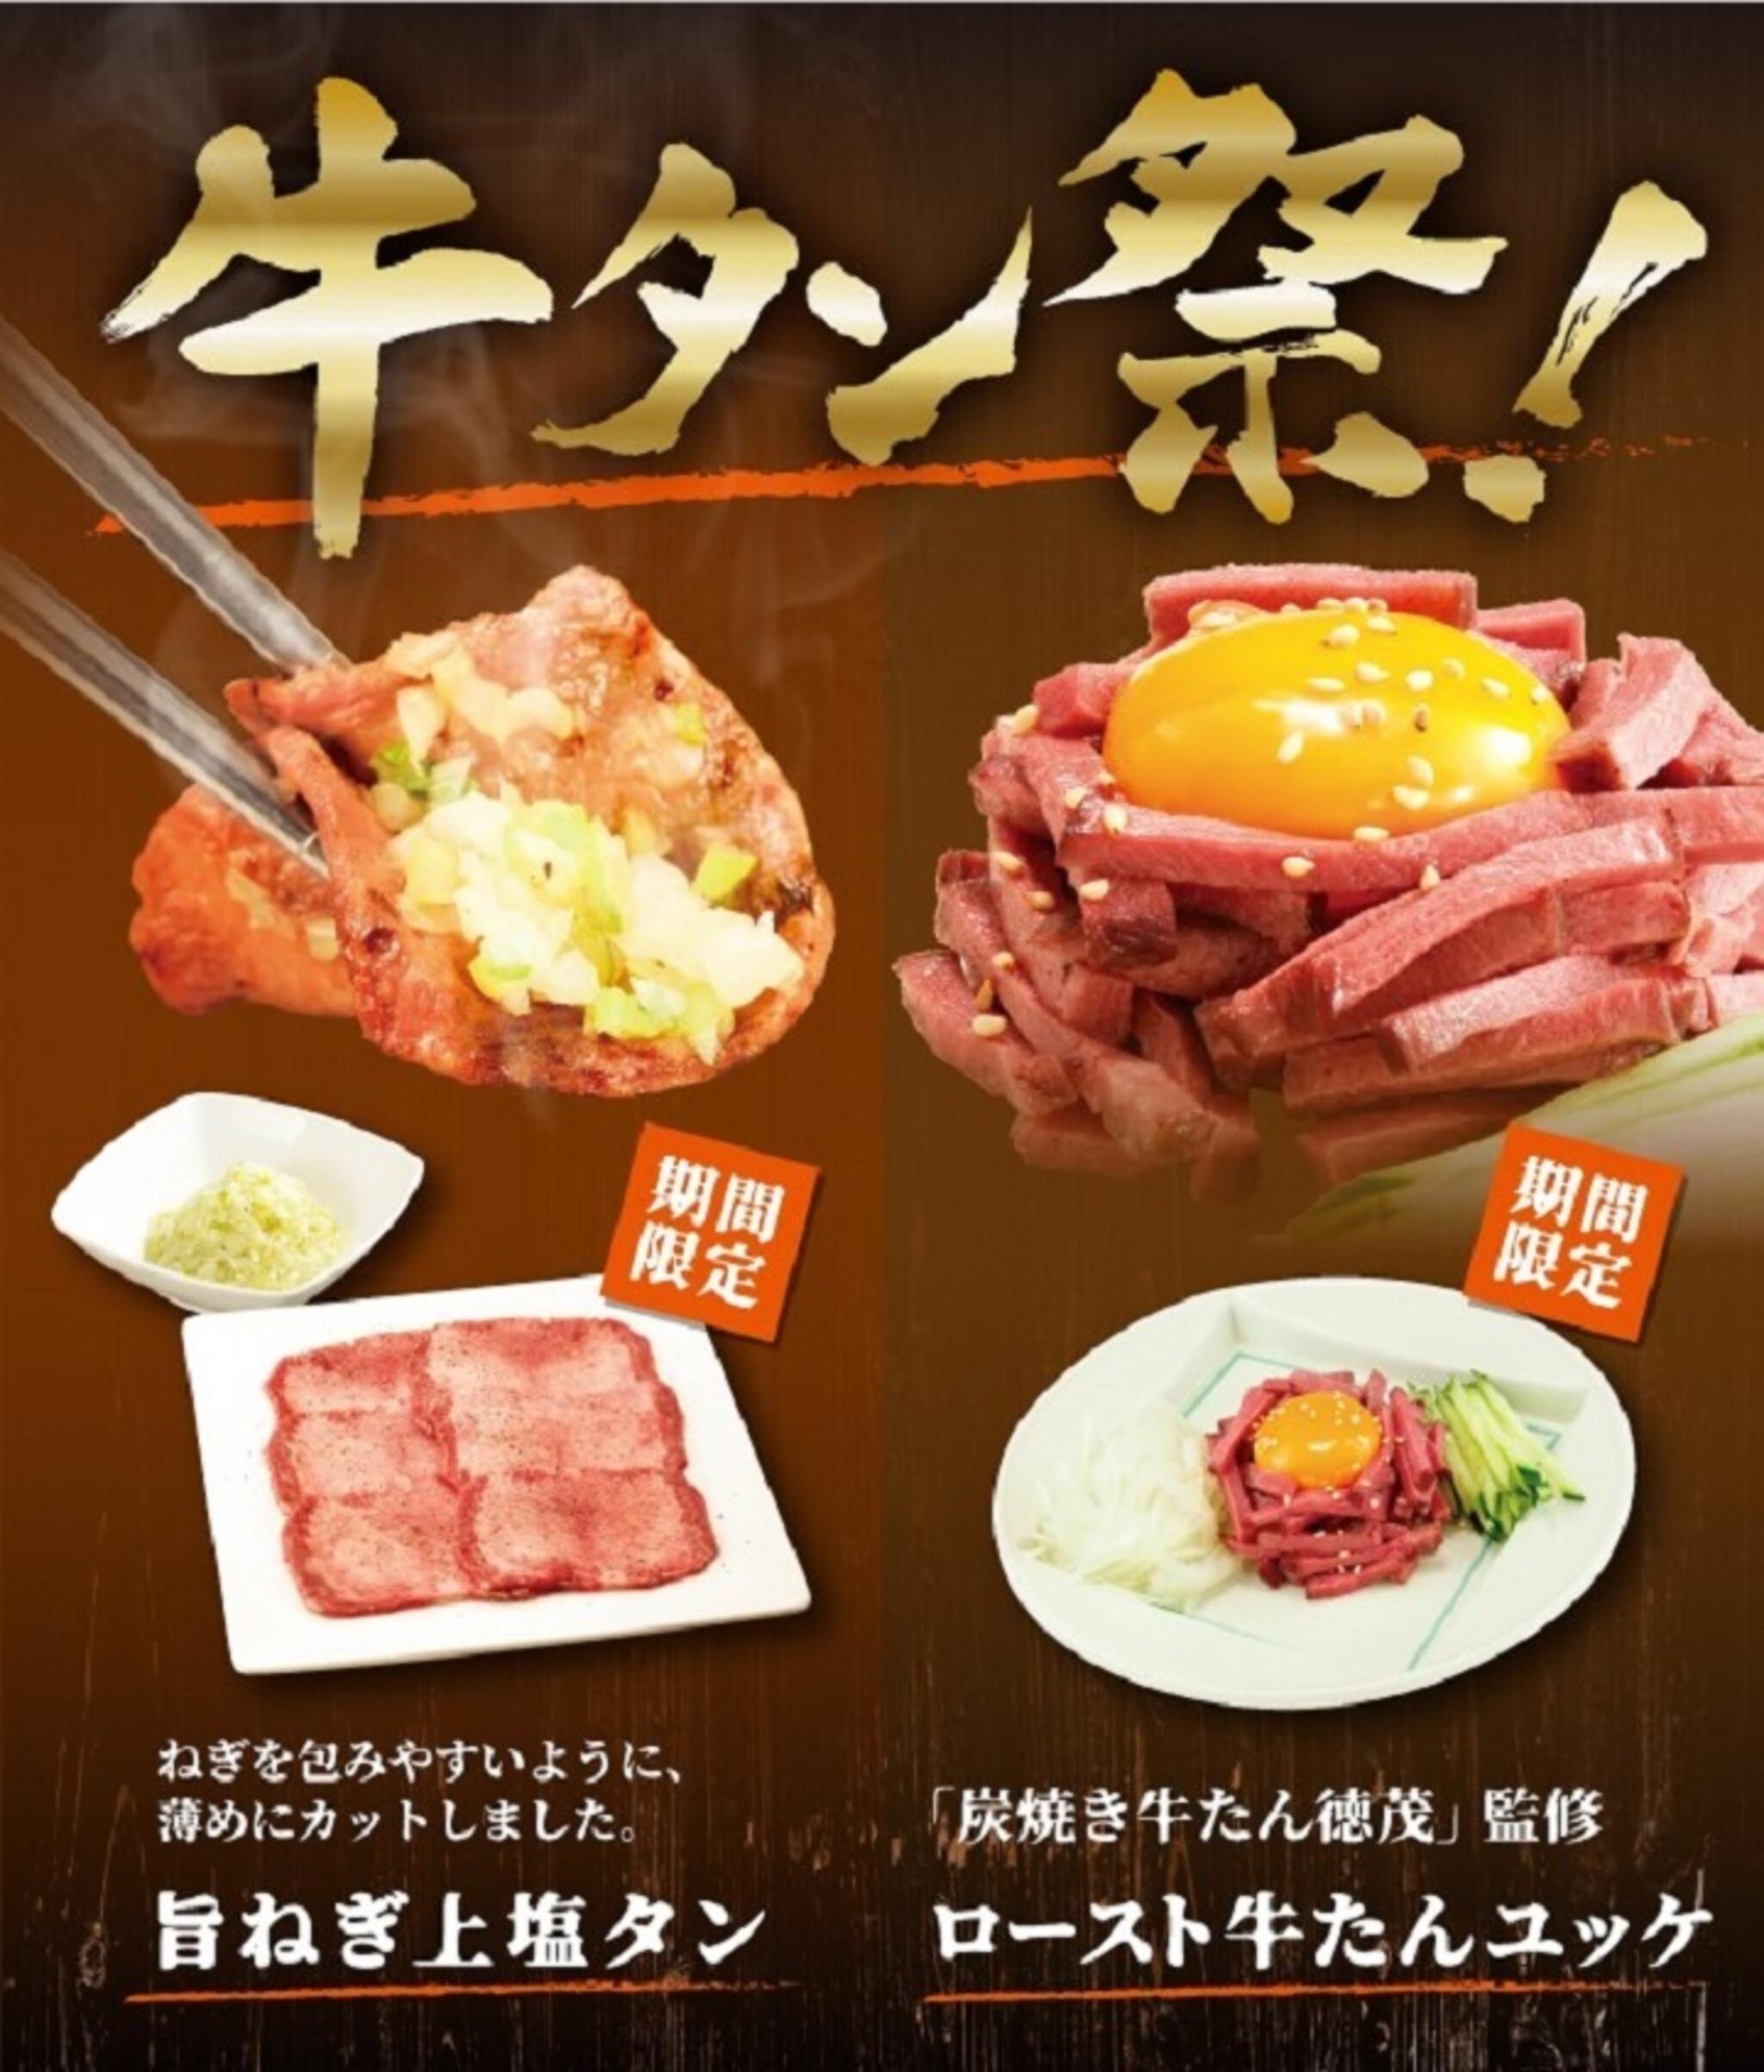 焼肉冷麺やまなか家 上田バイパス店からのお知らせ(🎇やまなか家牛タン祭り🎇)に関する写真